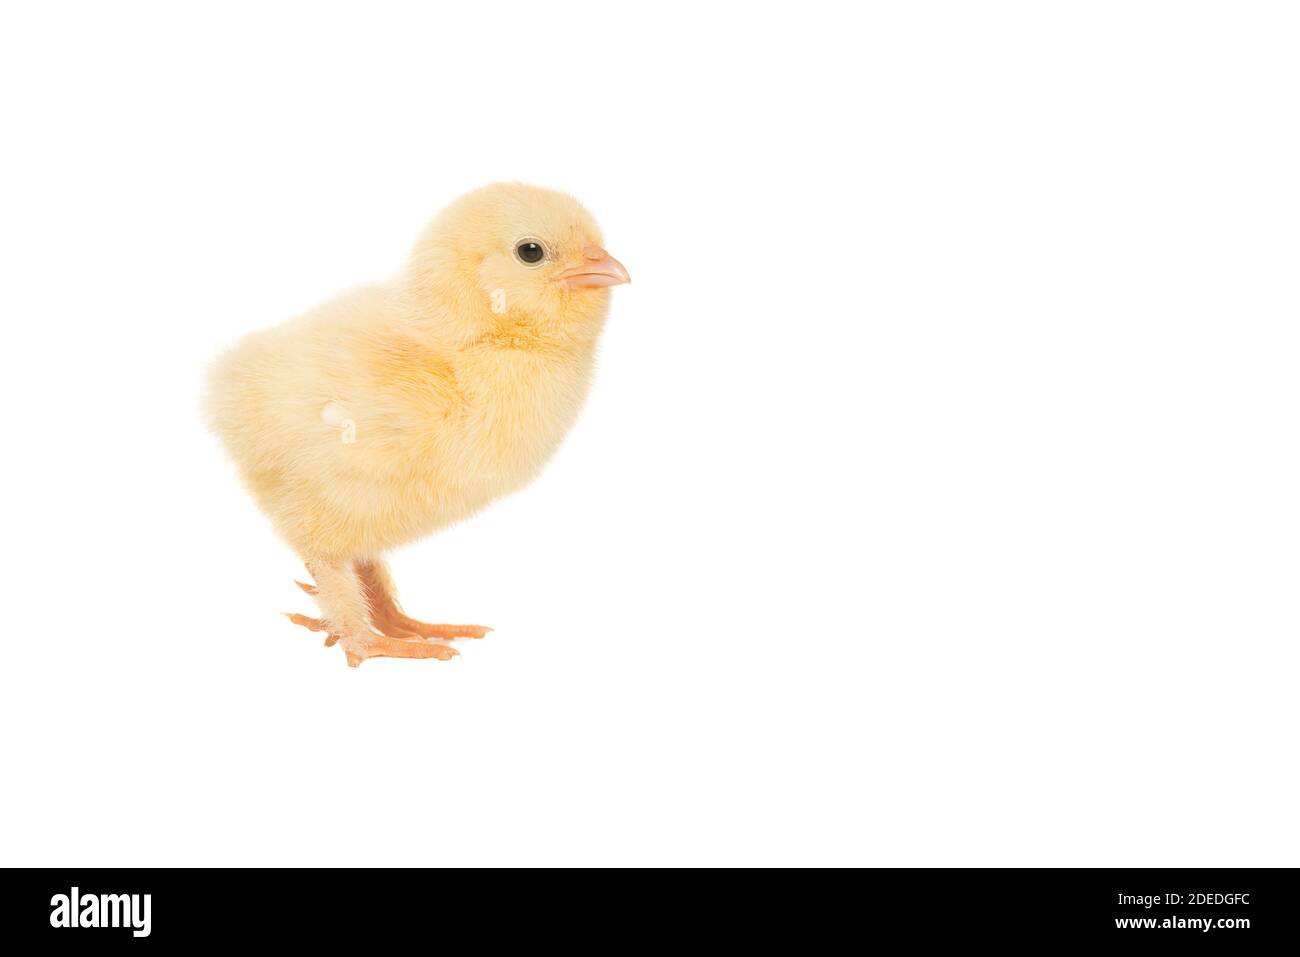 Carino giallo pollo giovane visto dal lato isolato su uno sfondo bianco Foto Stock